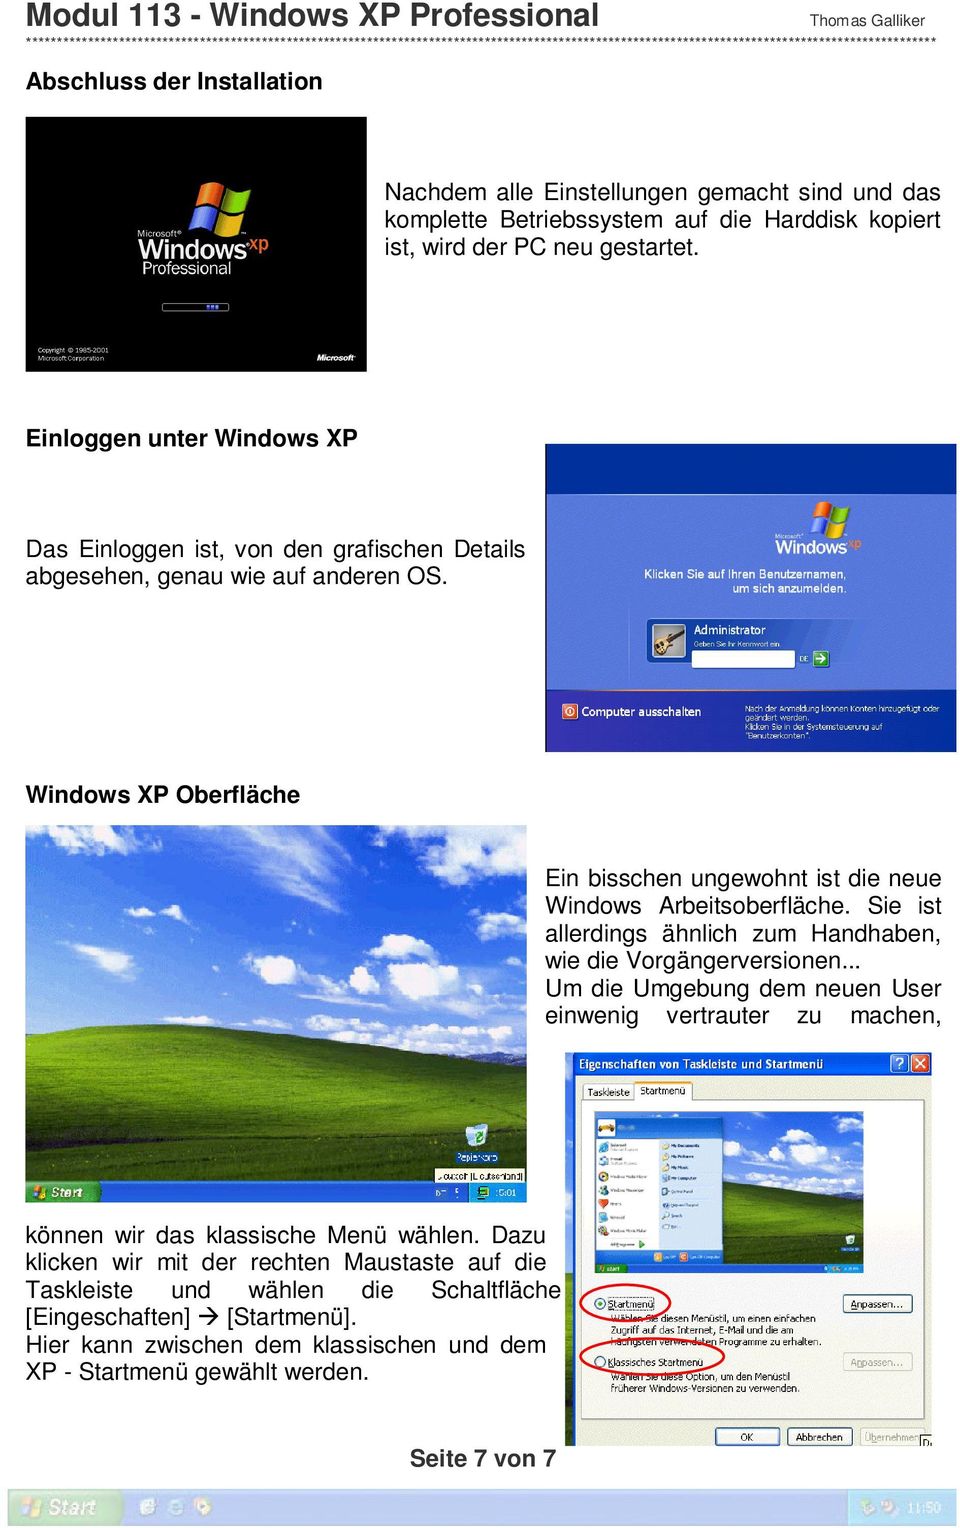 Windows XP Oberfläche Ein bisschen ungewohnt ist die neue Windows Arbeitsoberfläche. Sie ist allerdings ähnlich zum Handhaben, wie die Vorgängerversionen.